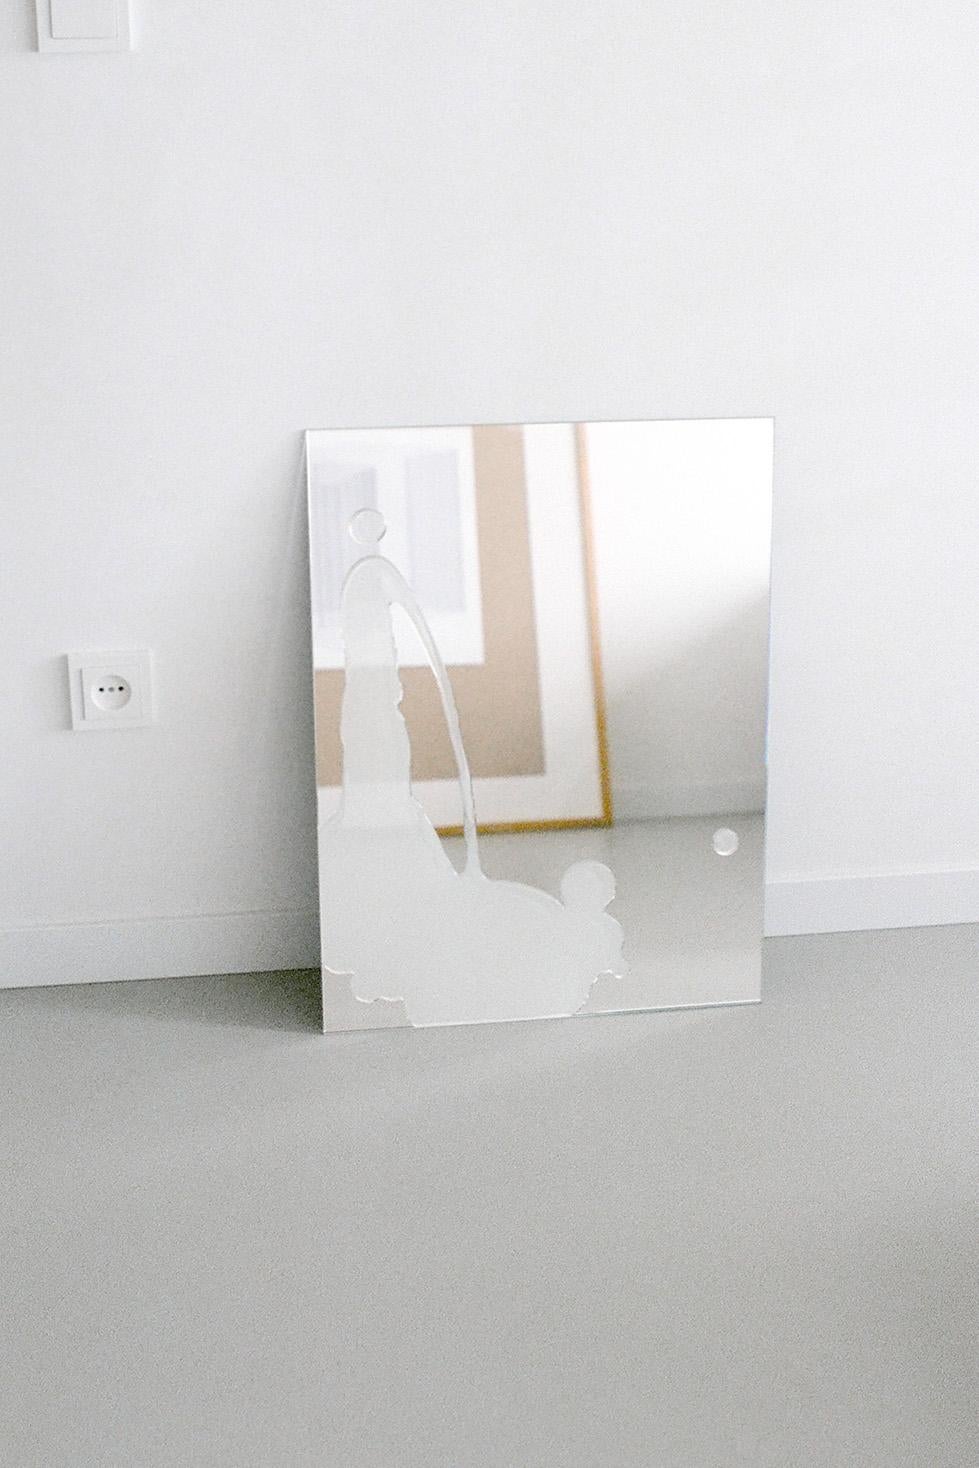 Dutch Medium Glaze Mirror in Silver with White splash by Sabine Marcelis For Sale